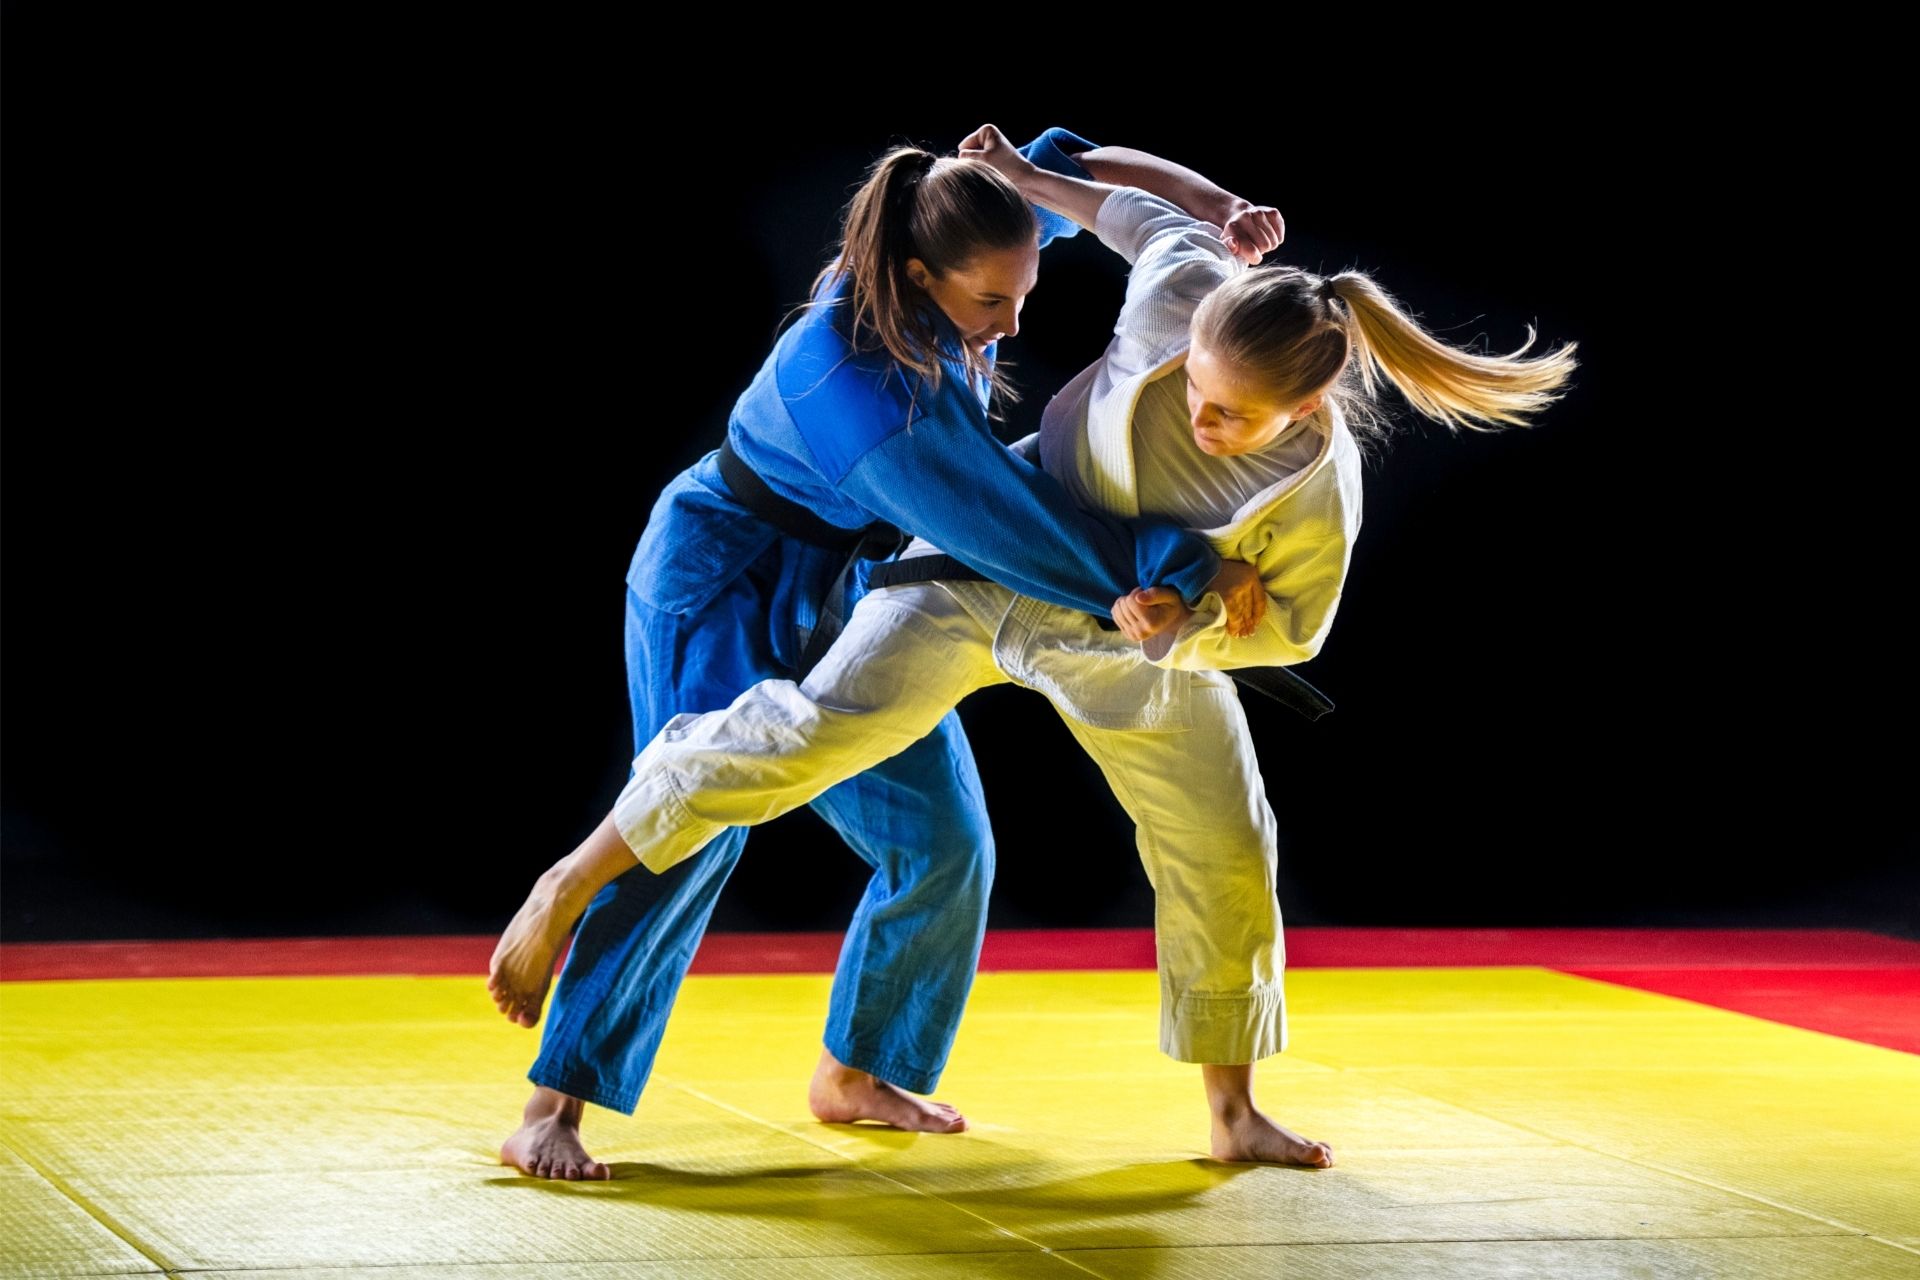 Les bases du judo